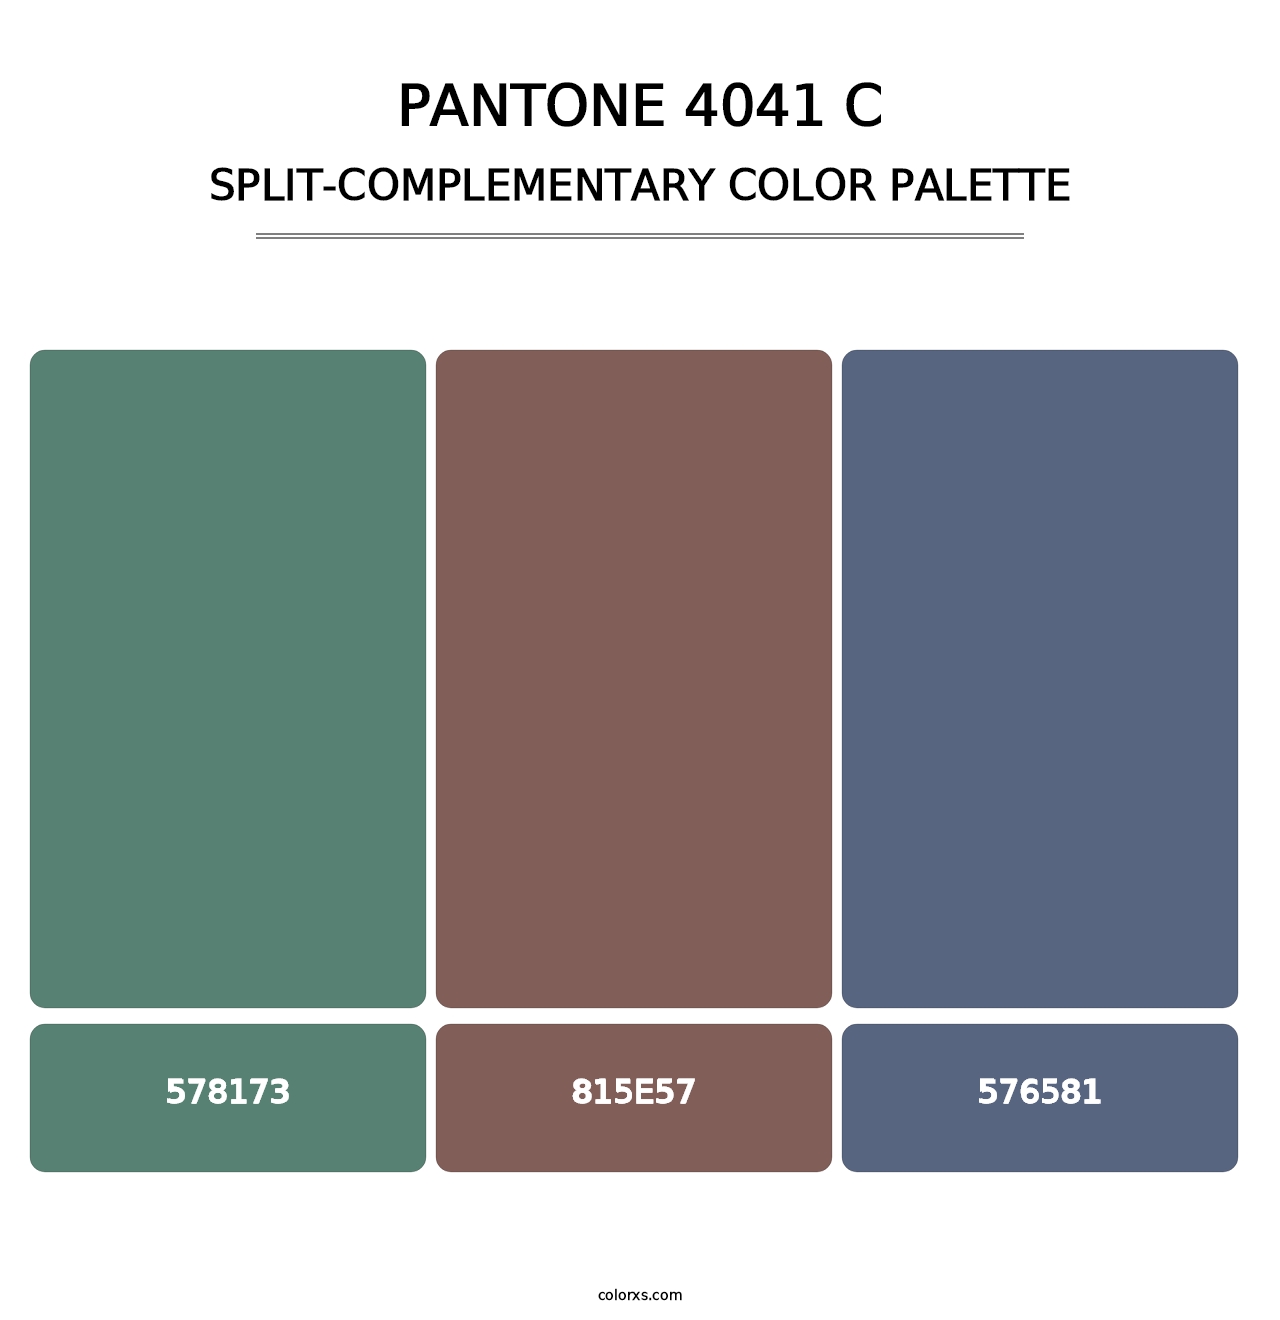 PANTONE 4041 C - Split-Complementary Color Palette